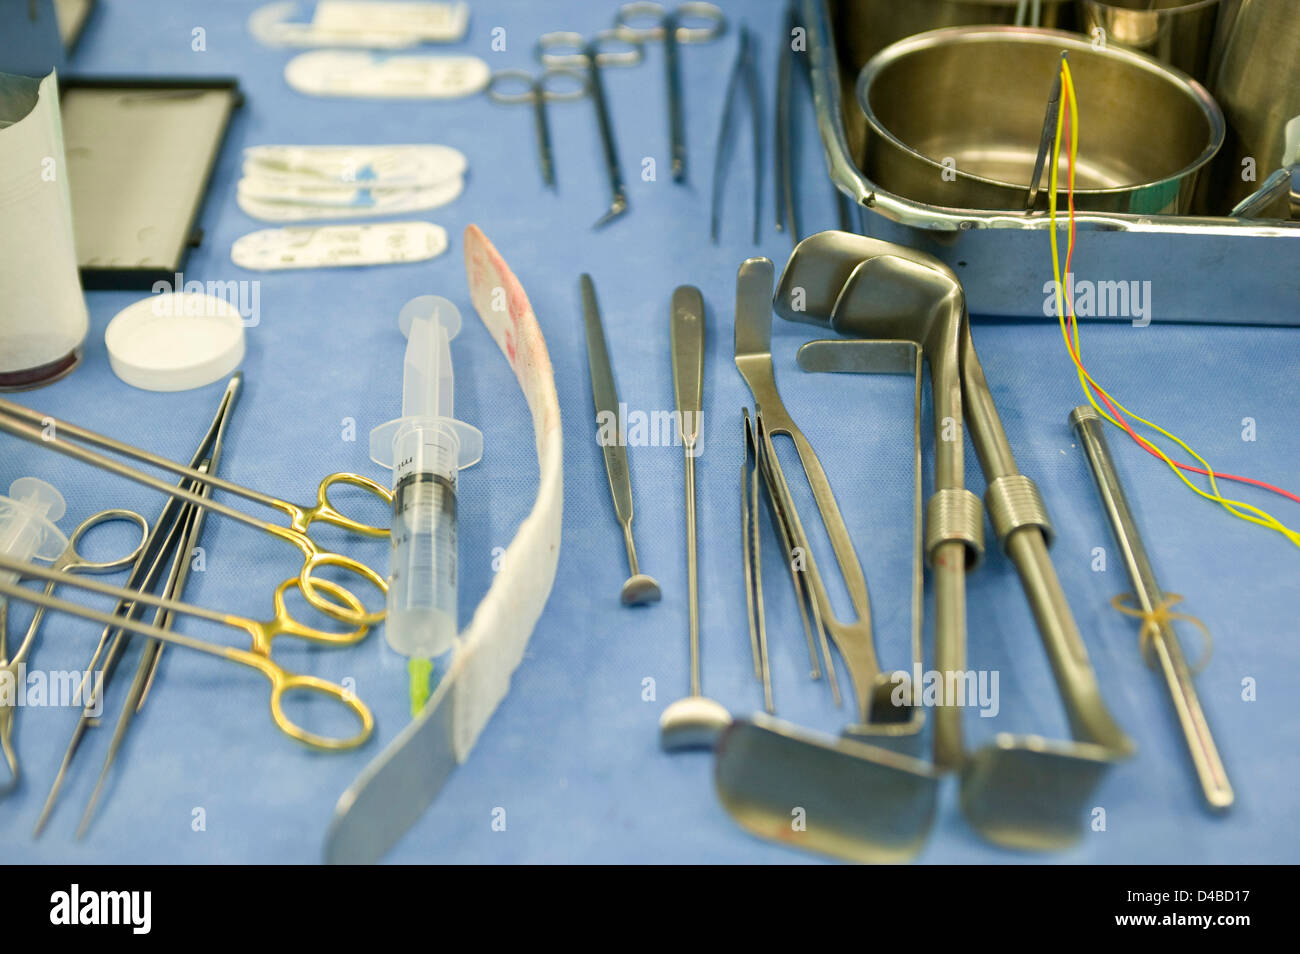 Una bandeja mixta de equipo quirúrgico. Foto de stock